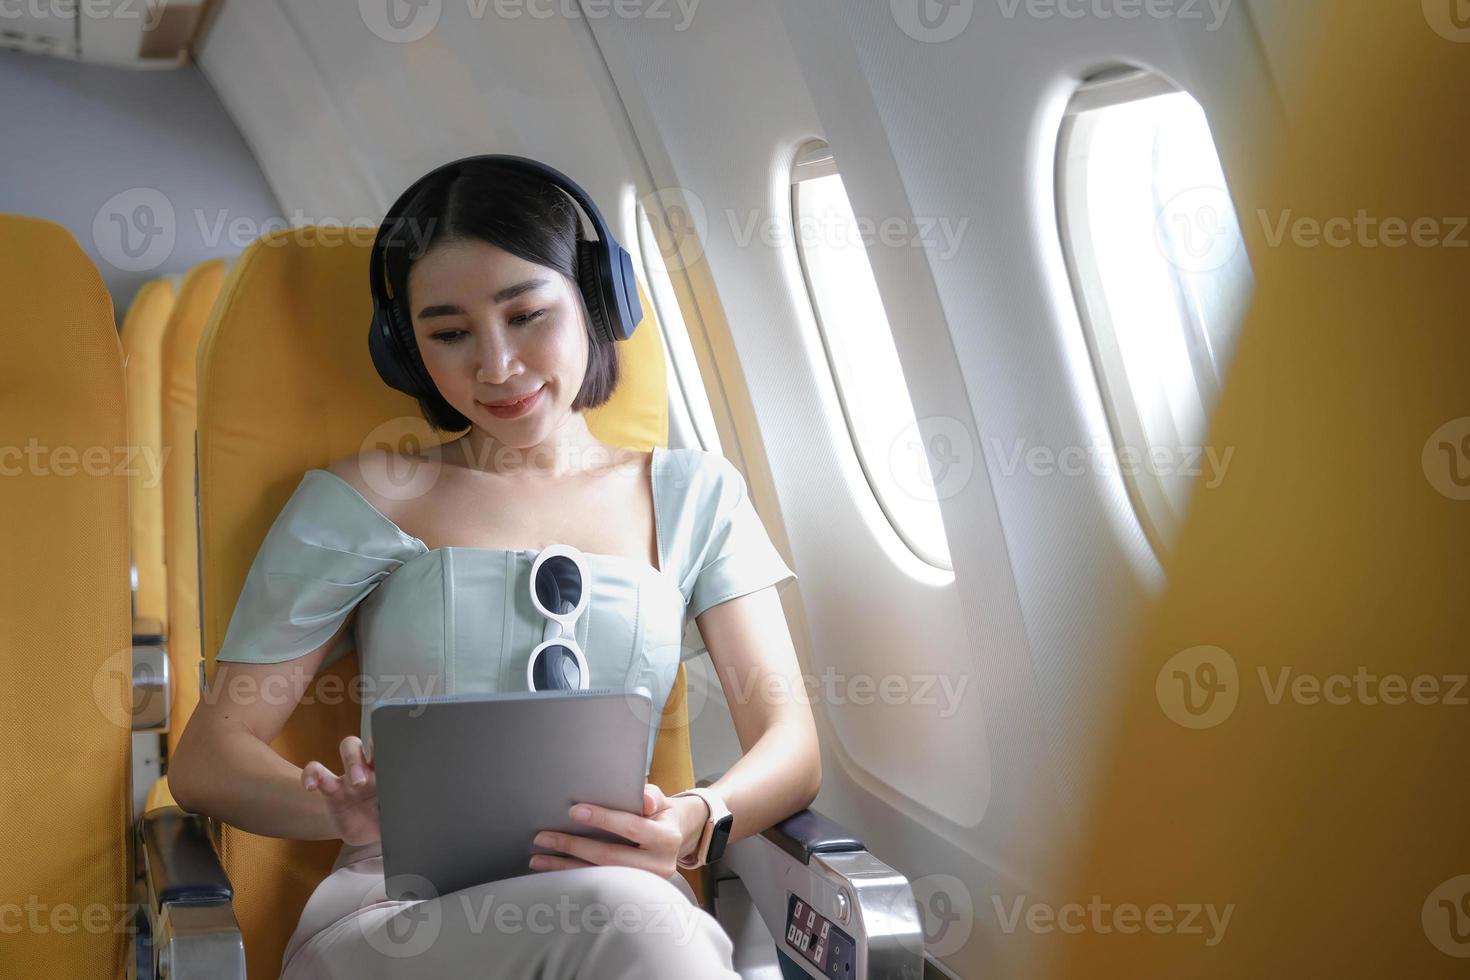 turismo de viagens com tecnologia moderna e conceito de voos aéreos, mulher sentada no avião com gadget digital moderno e pesquisando lista de reprodução de música favorita no aplicativo para ouvir foto